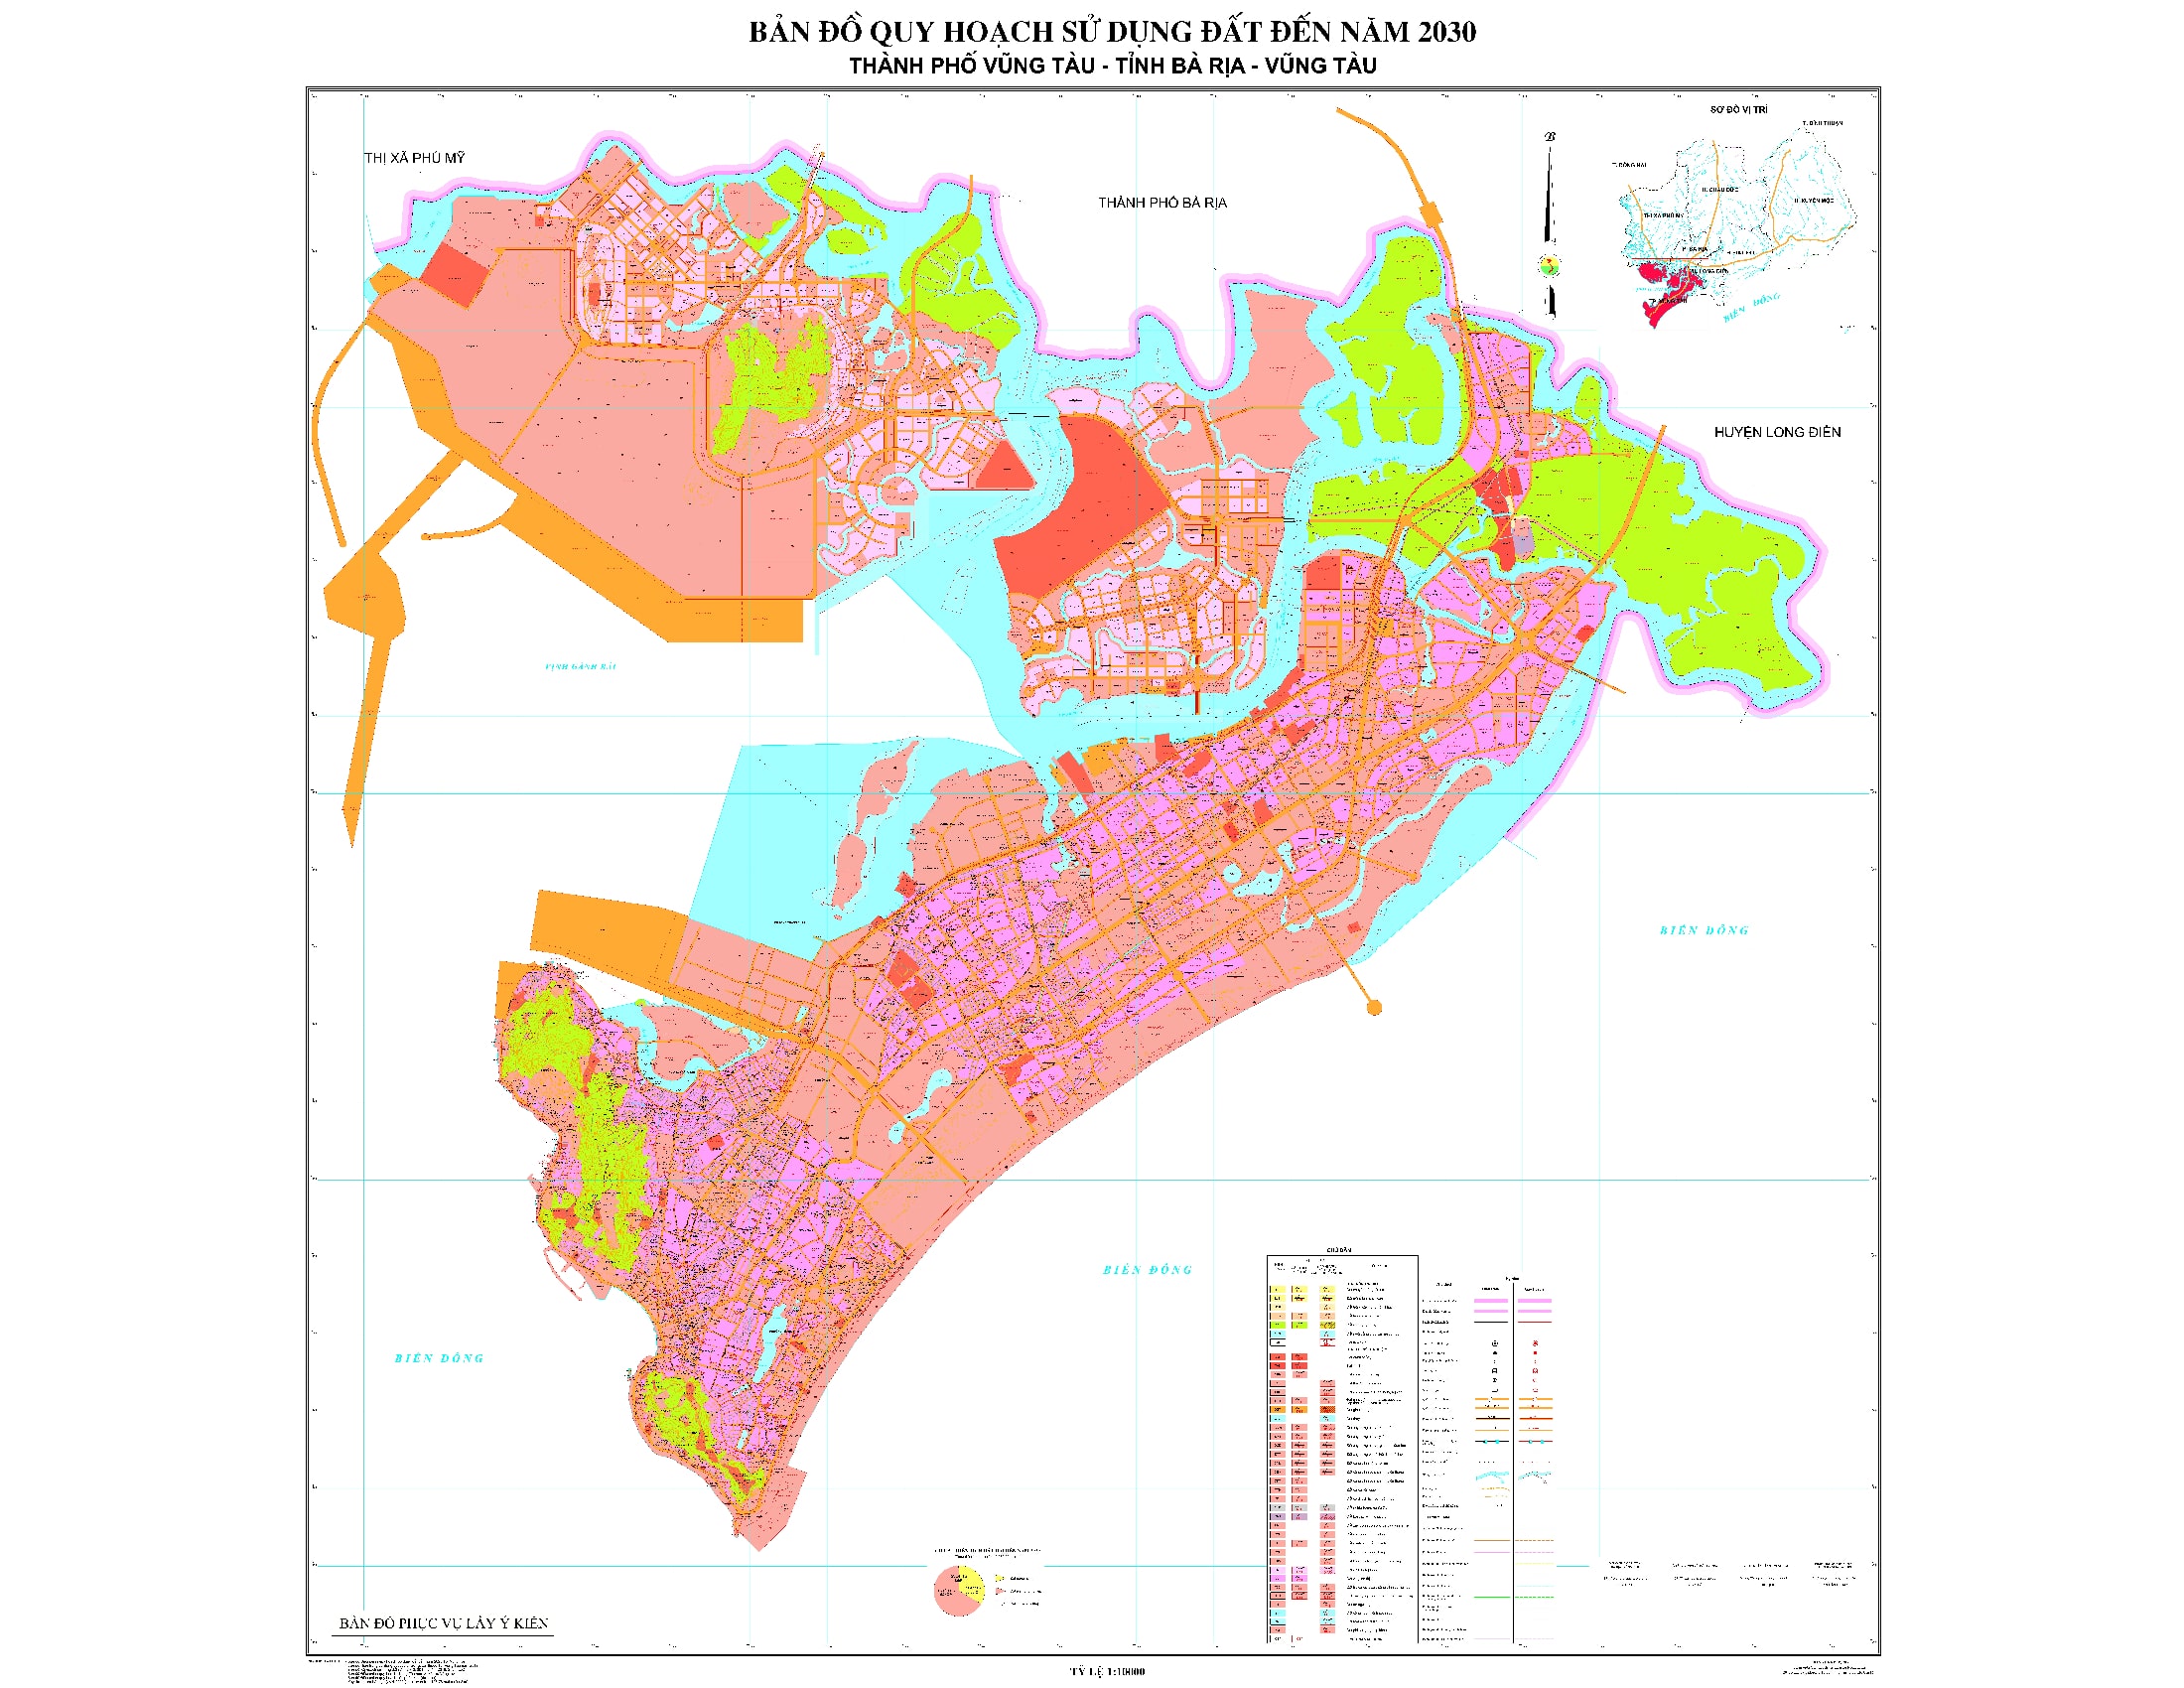 Bản đồ quy hoạch thành phố Vũng Tàu, tỉnh Bà Rịa - Vũng Tàu đến năm ...